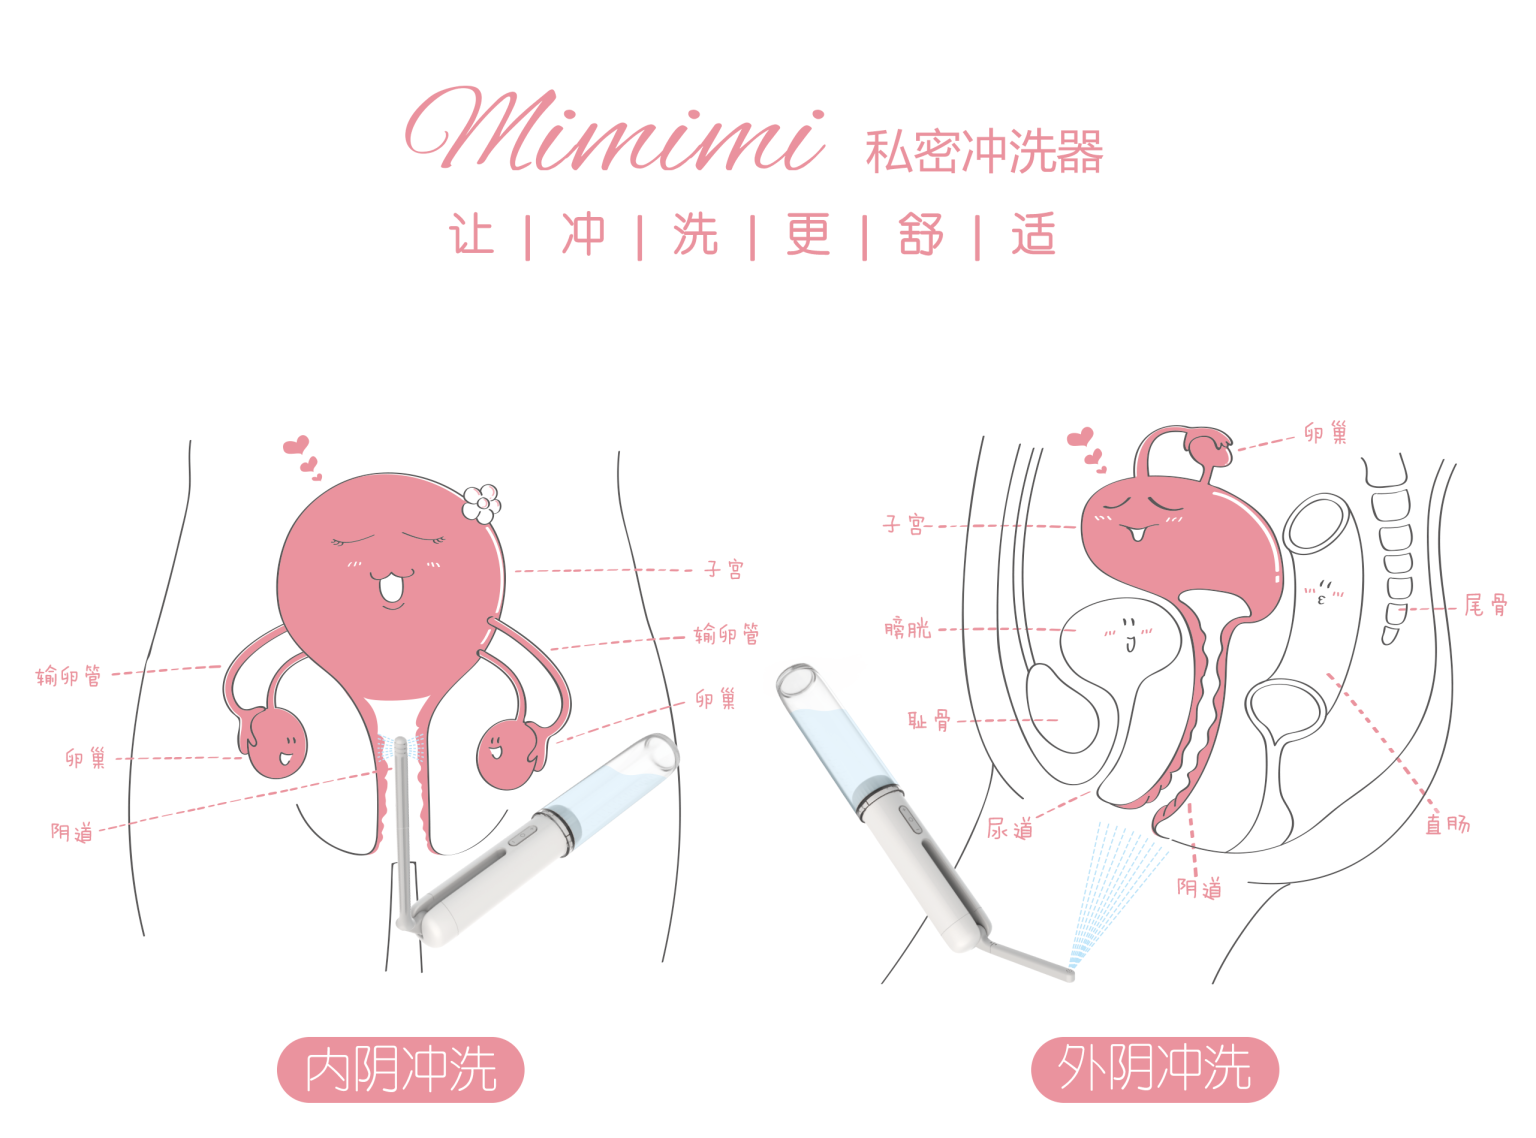 一用钟情!日本研制冲洗器mimimi「实用又不失温暖的好设计」